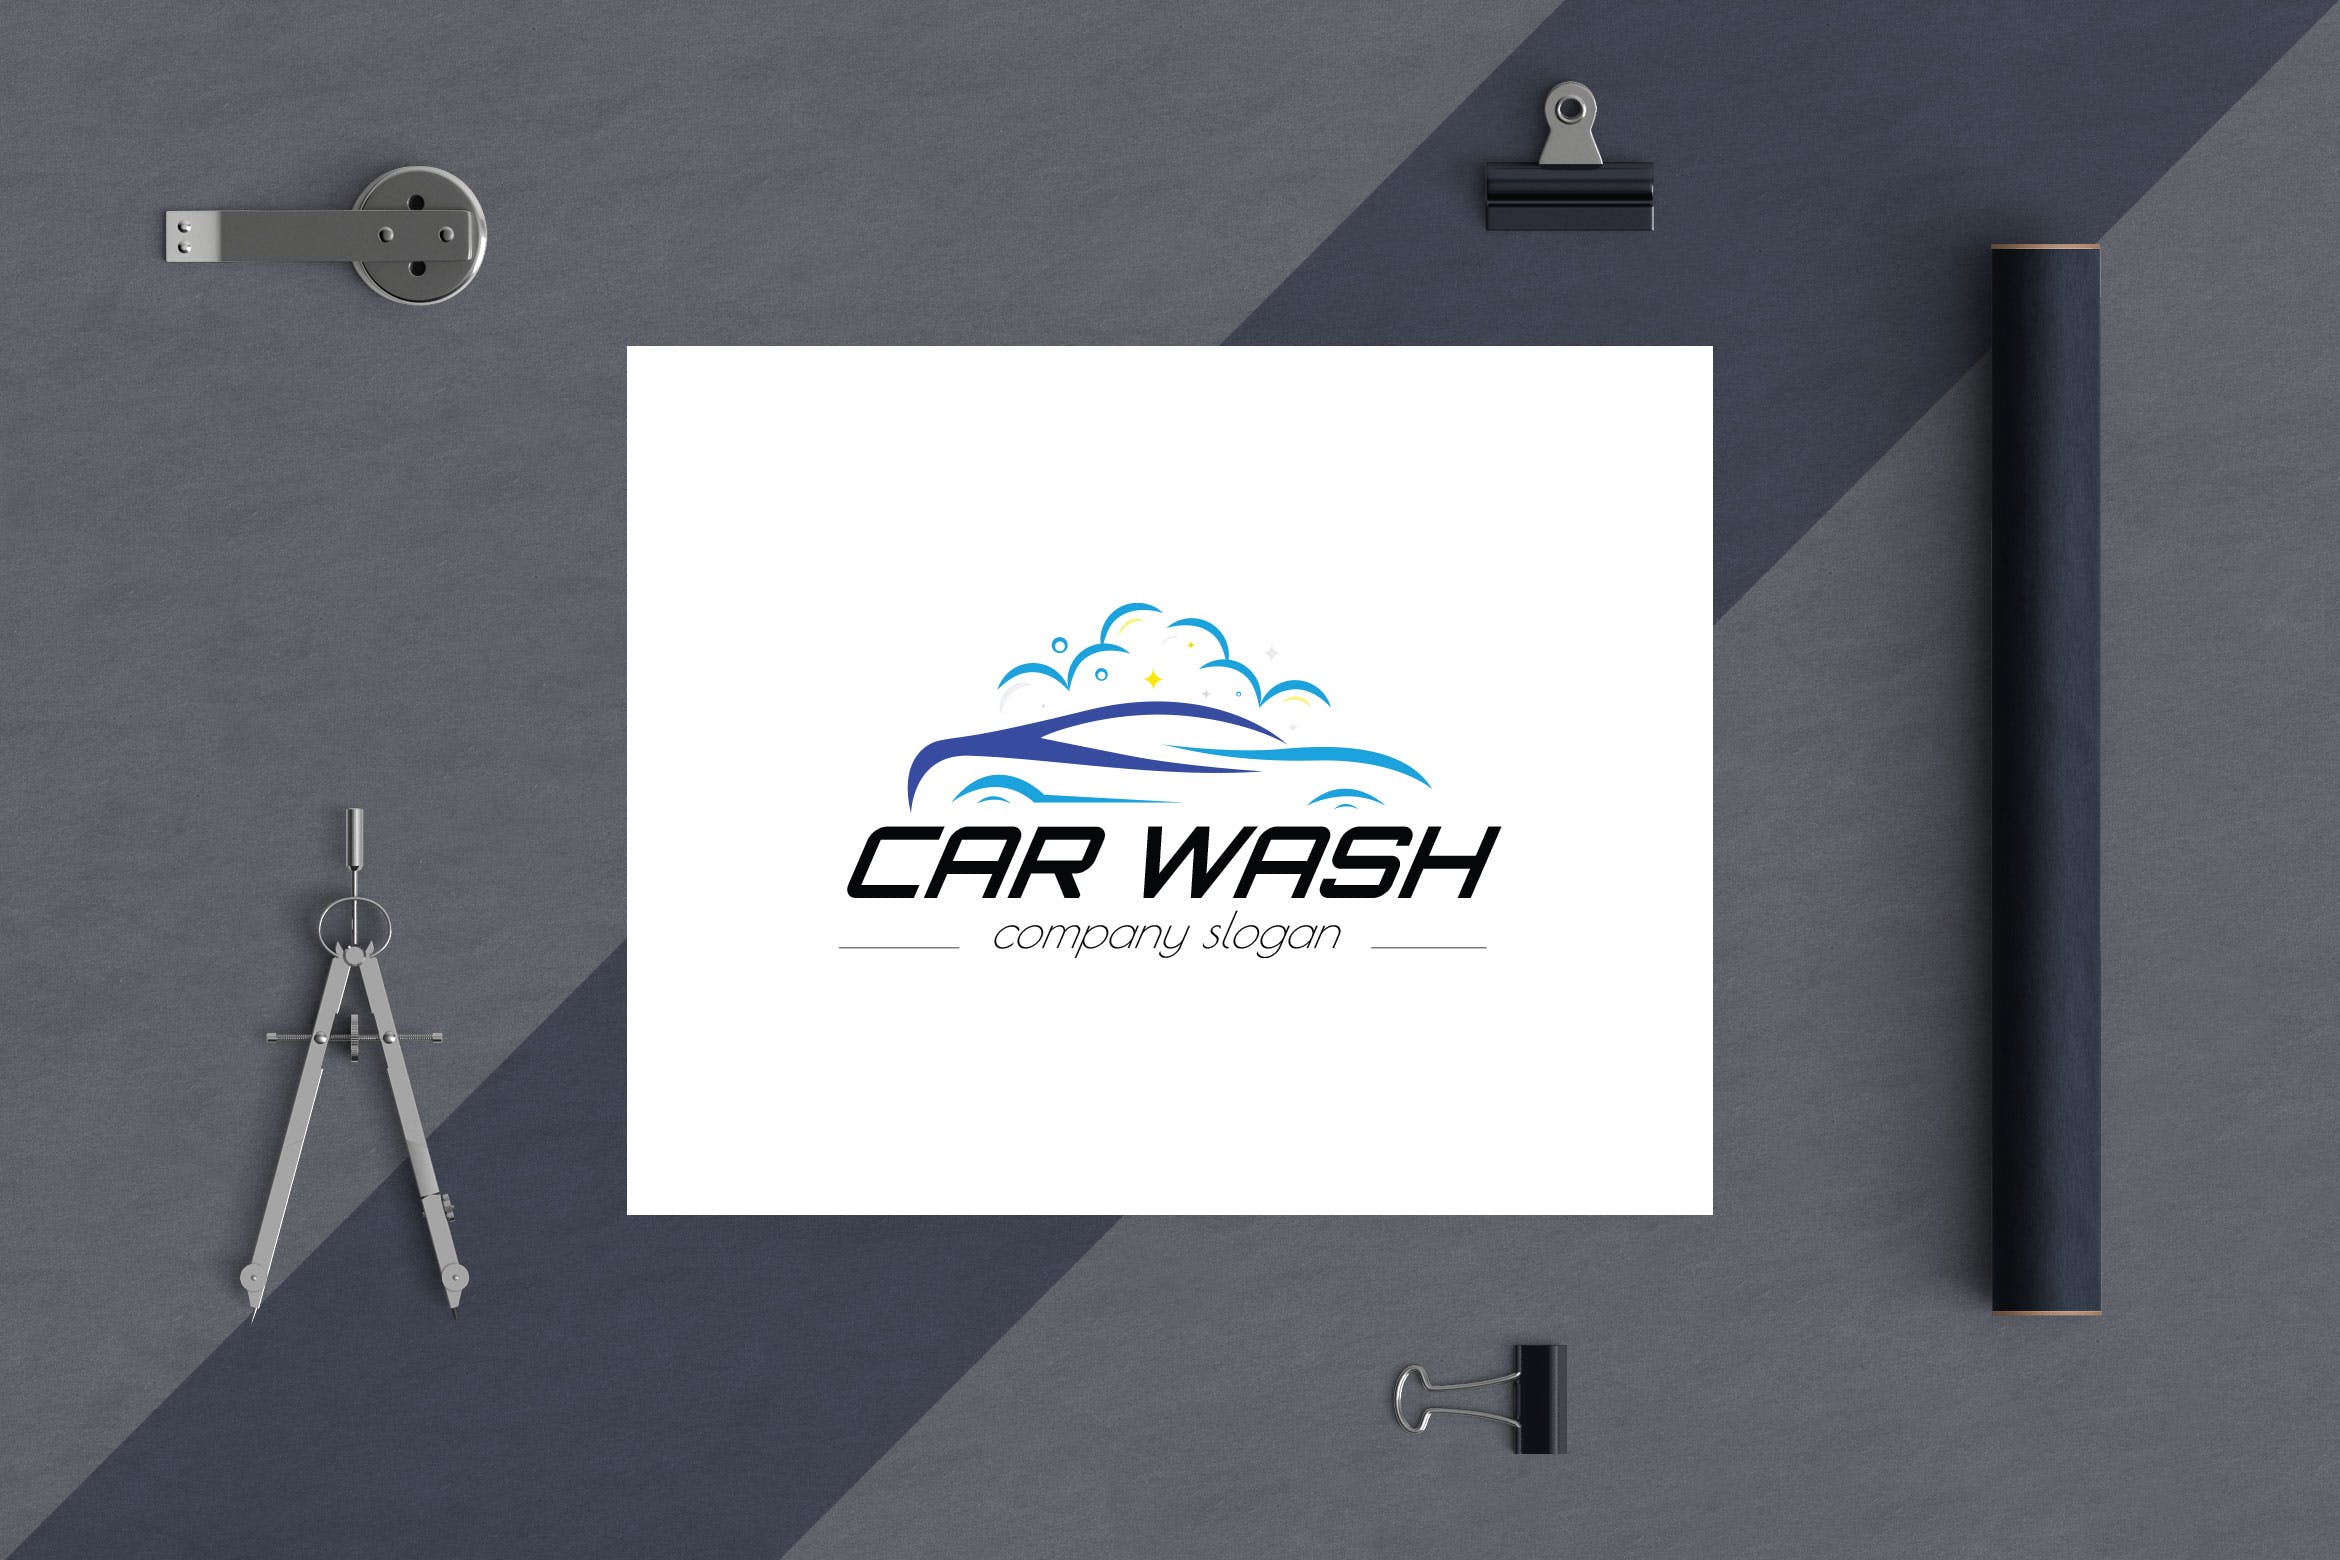 洗车店品牌Logo设计普贤居精选模板 Car Wash Business Logo Template插图